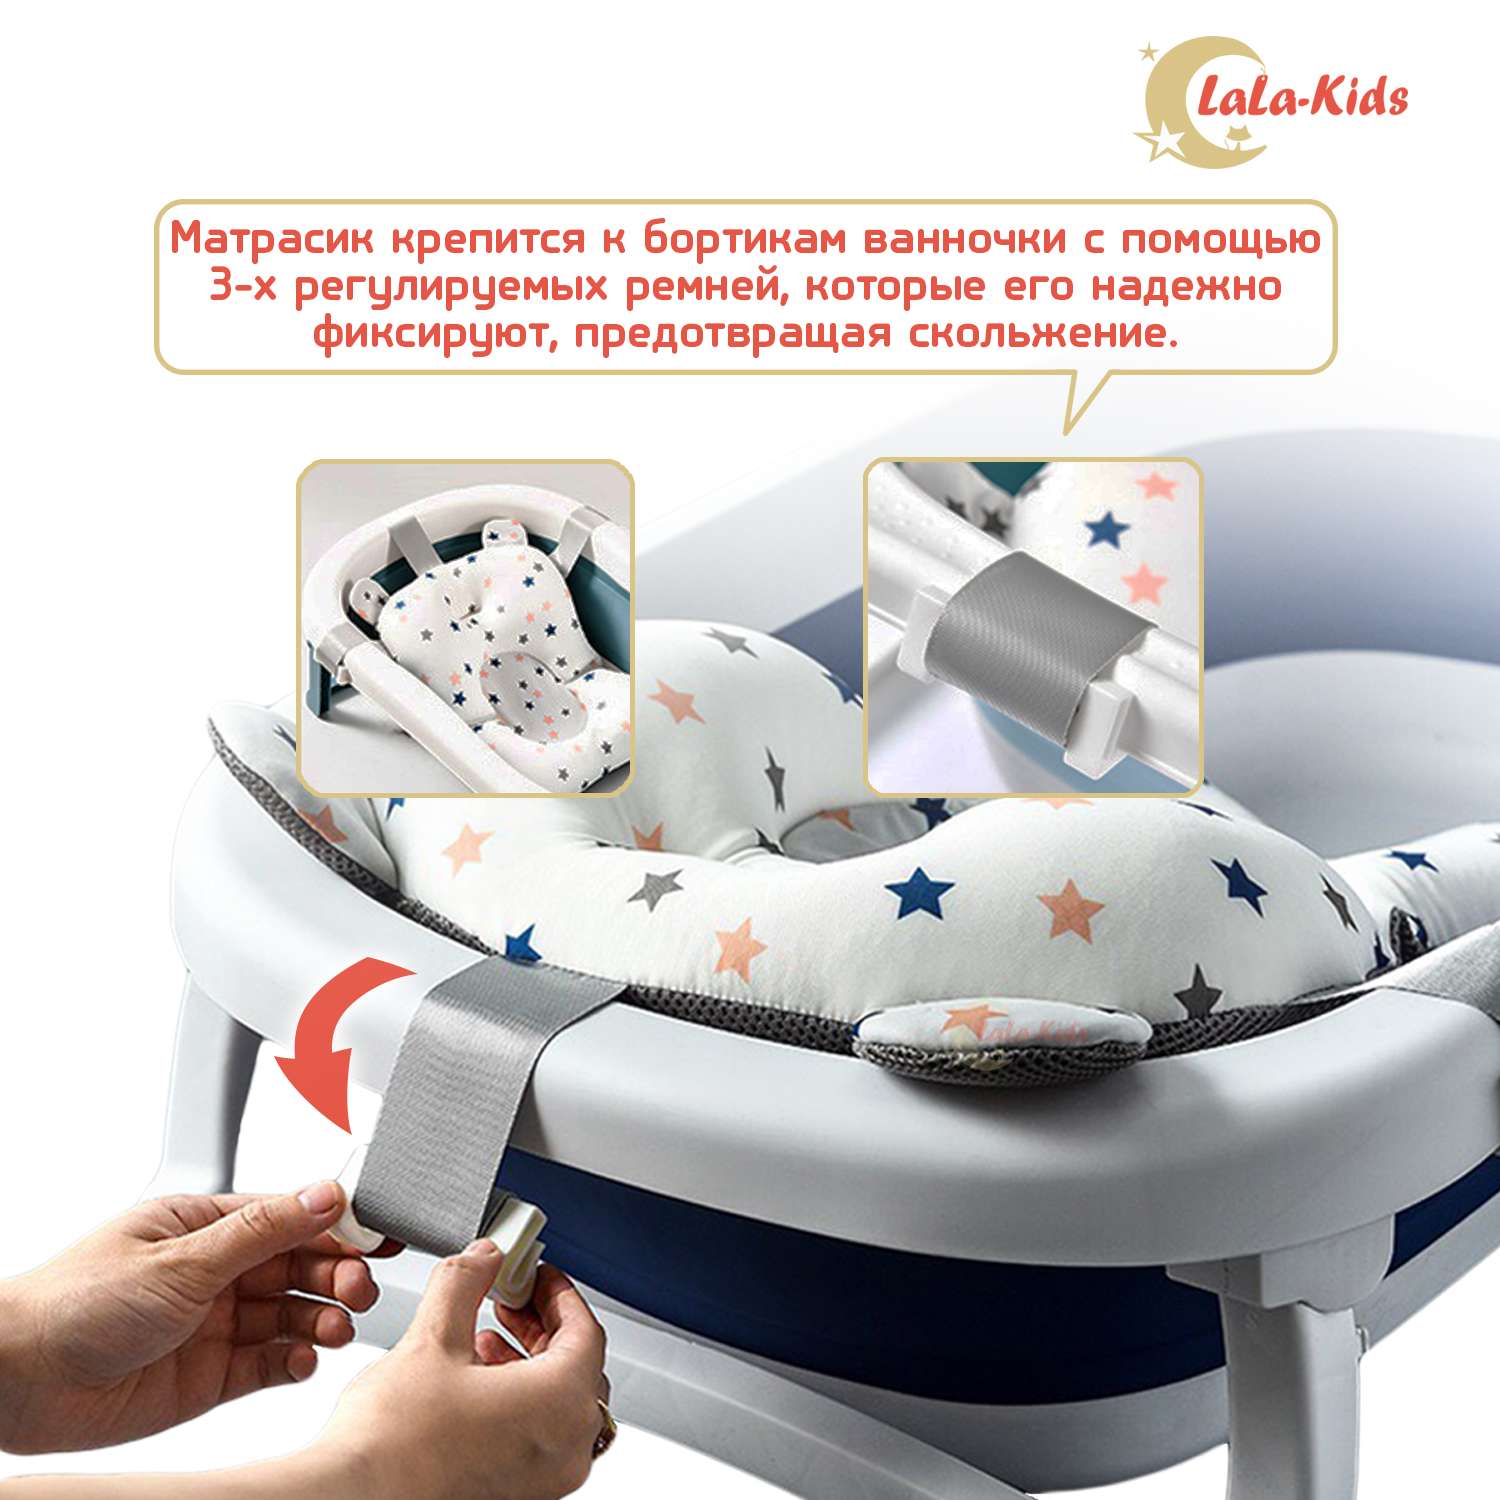 Матрас LaLa-Kids для купания новорожденных со звездами - фото 3